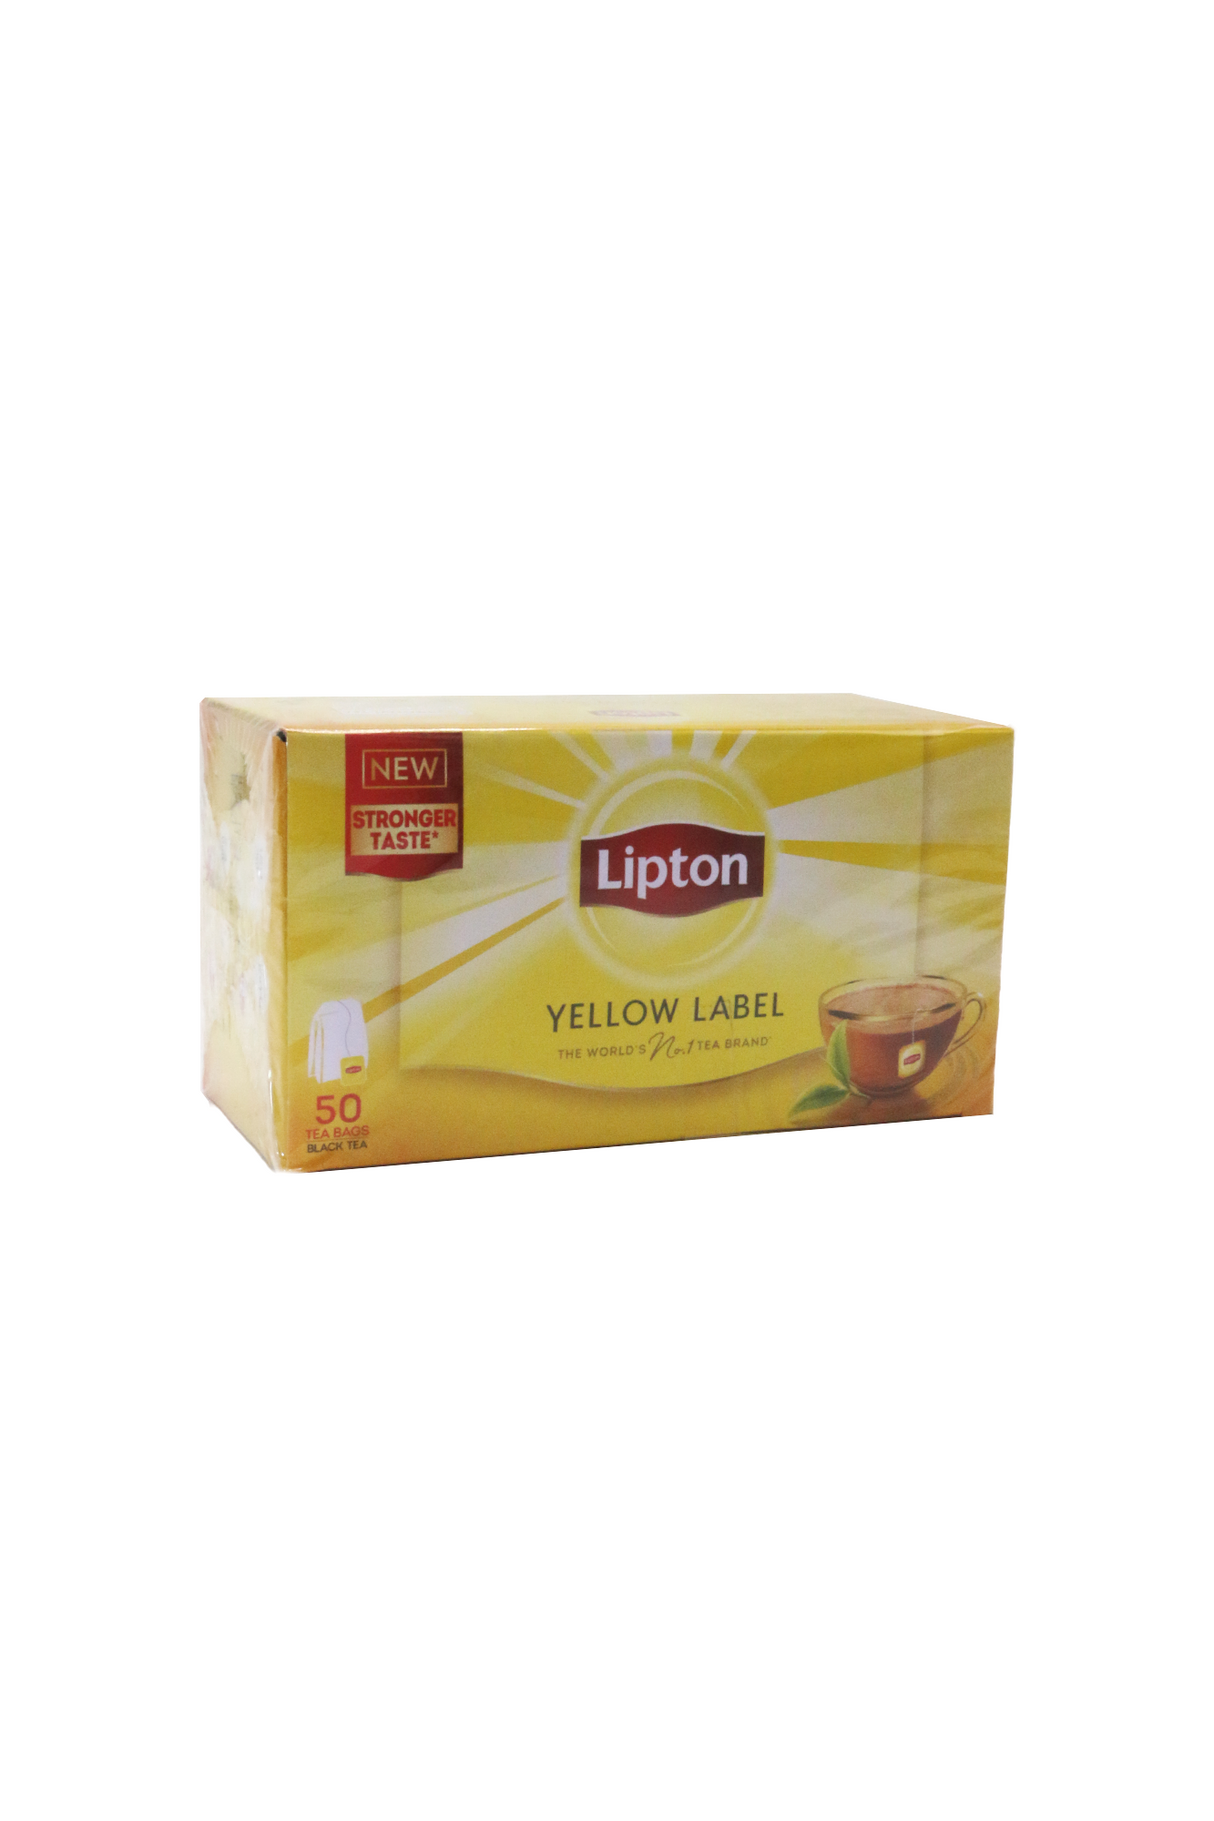 lipton tea 50tea bag